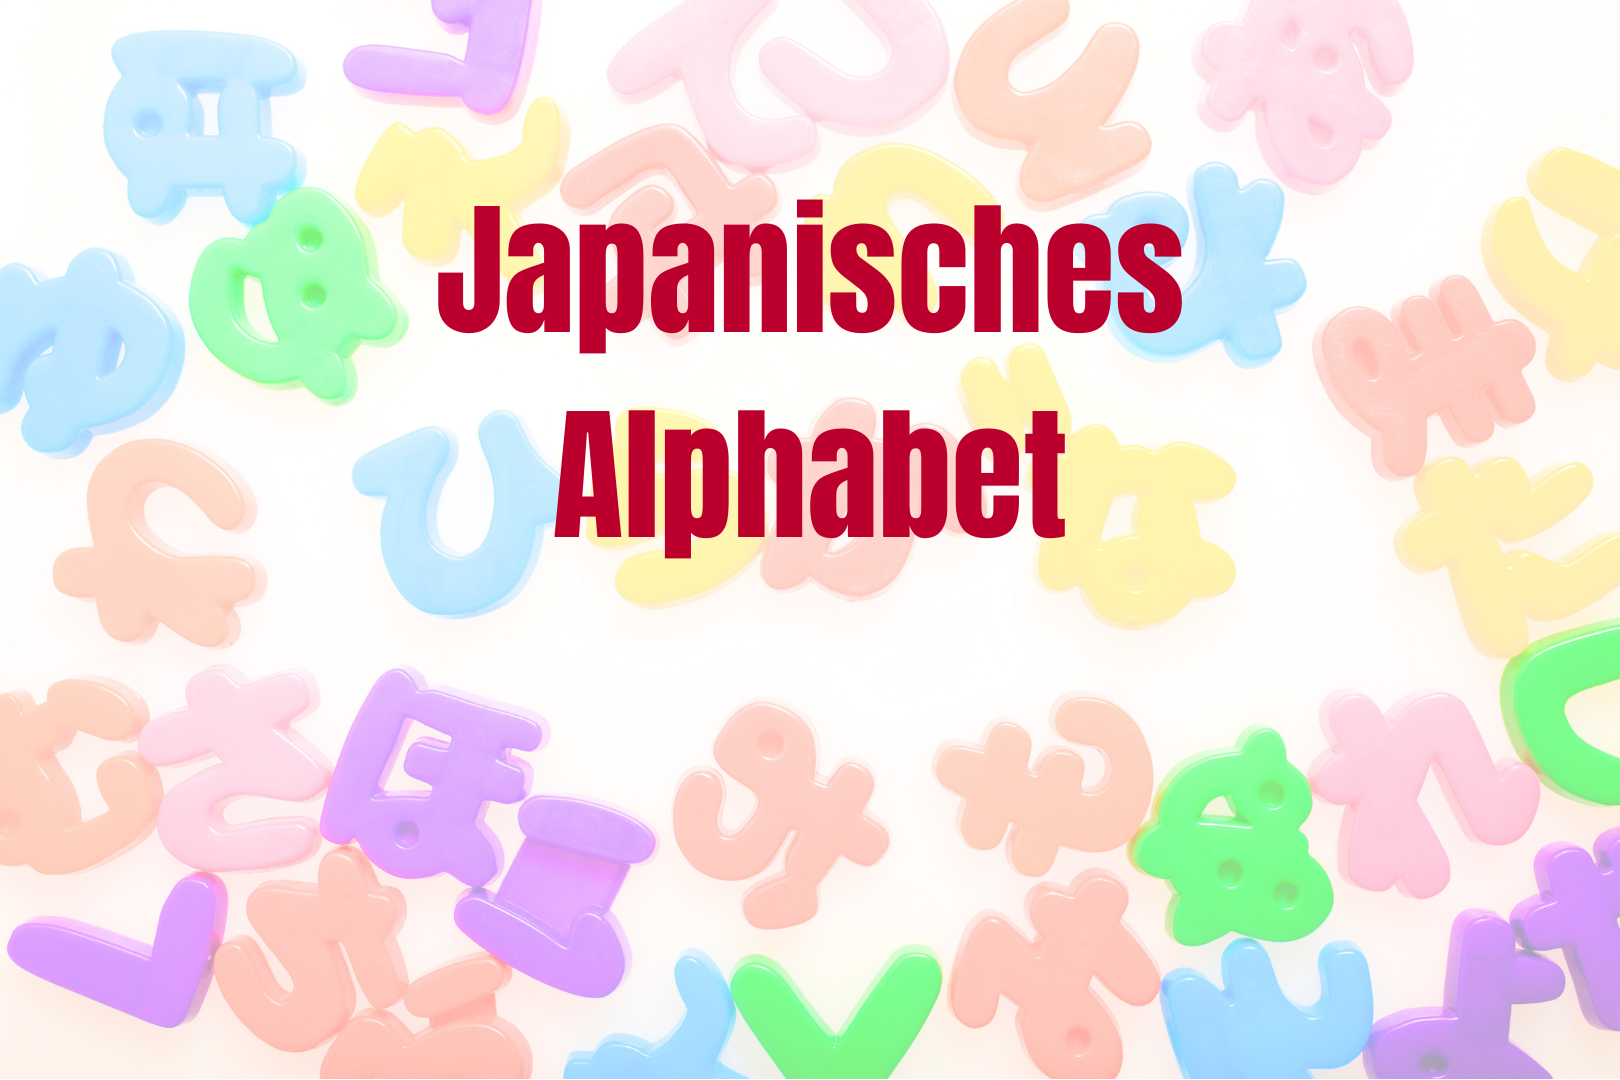 Japanisches Alphabet: Bunte Hiragana- und Katakana-Buchstaben